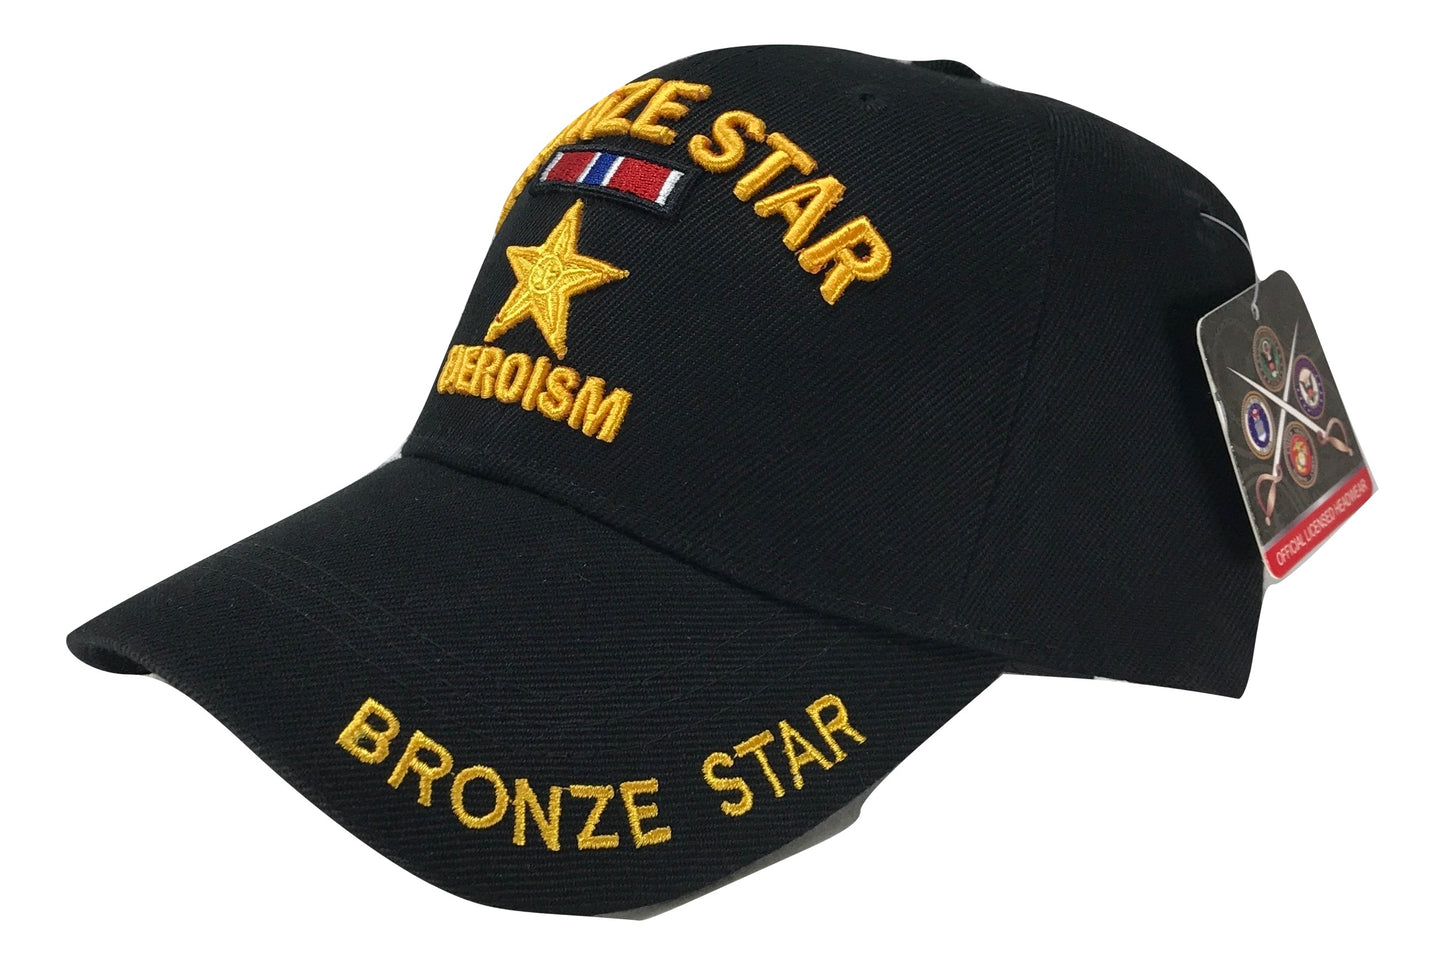 Bronze Star - Heroism